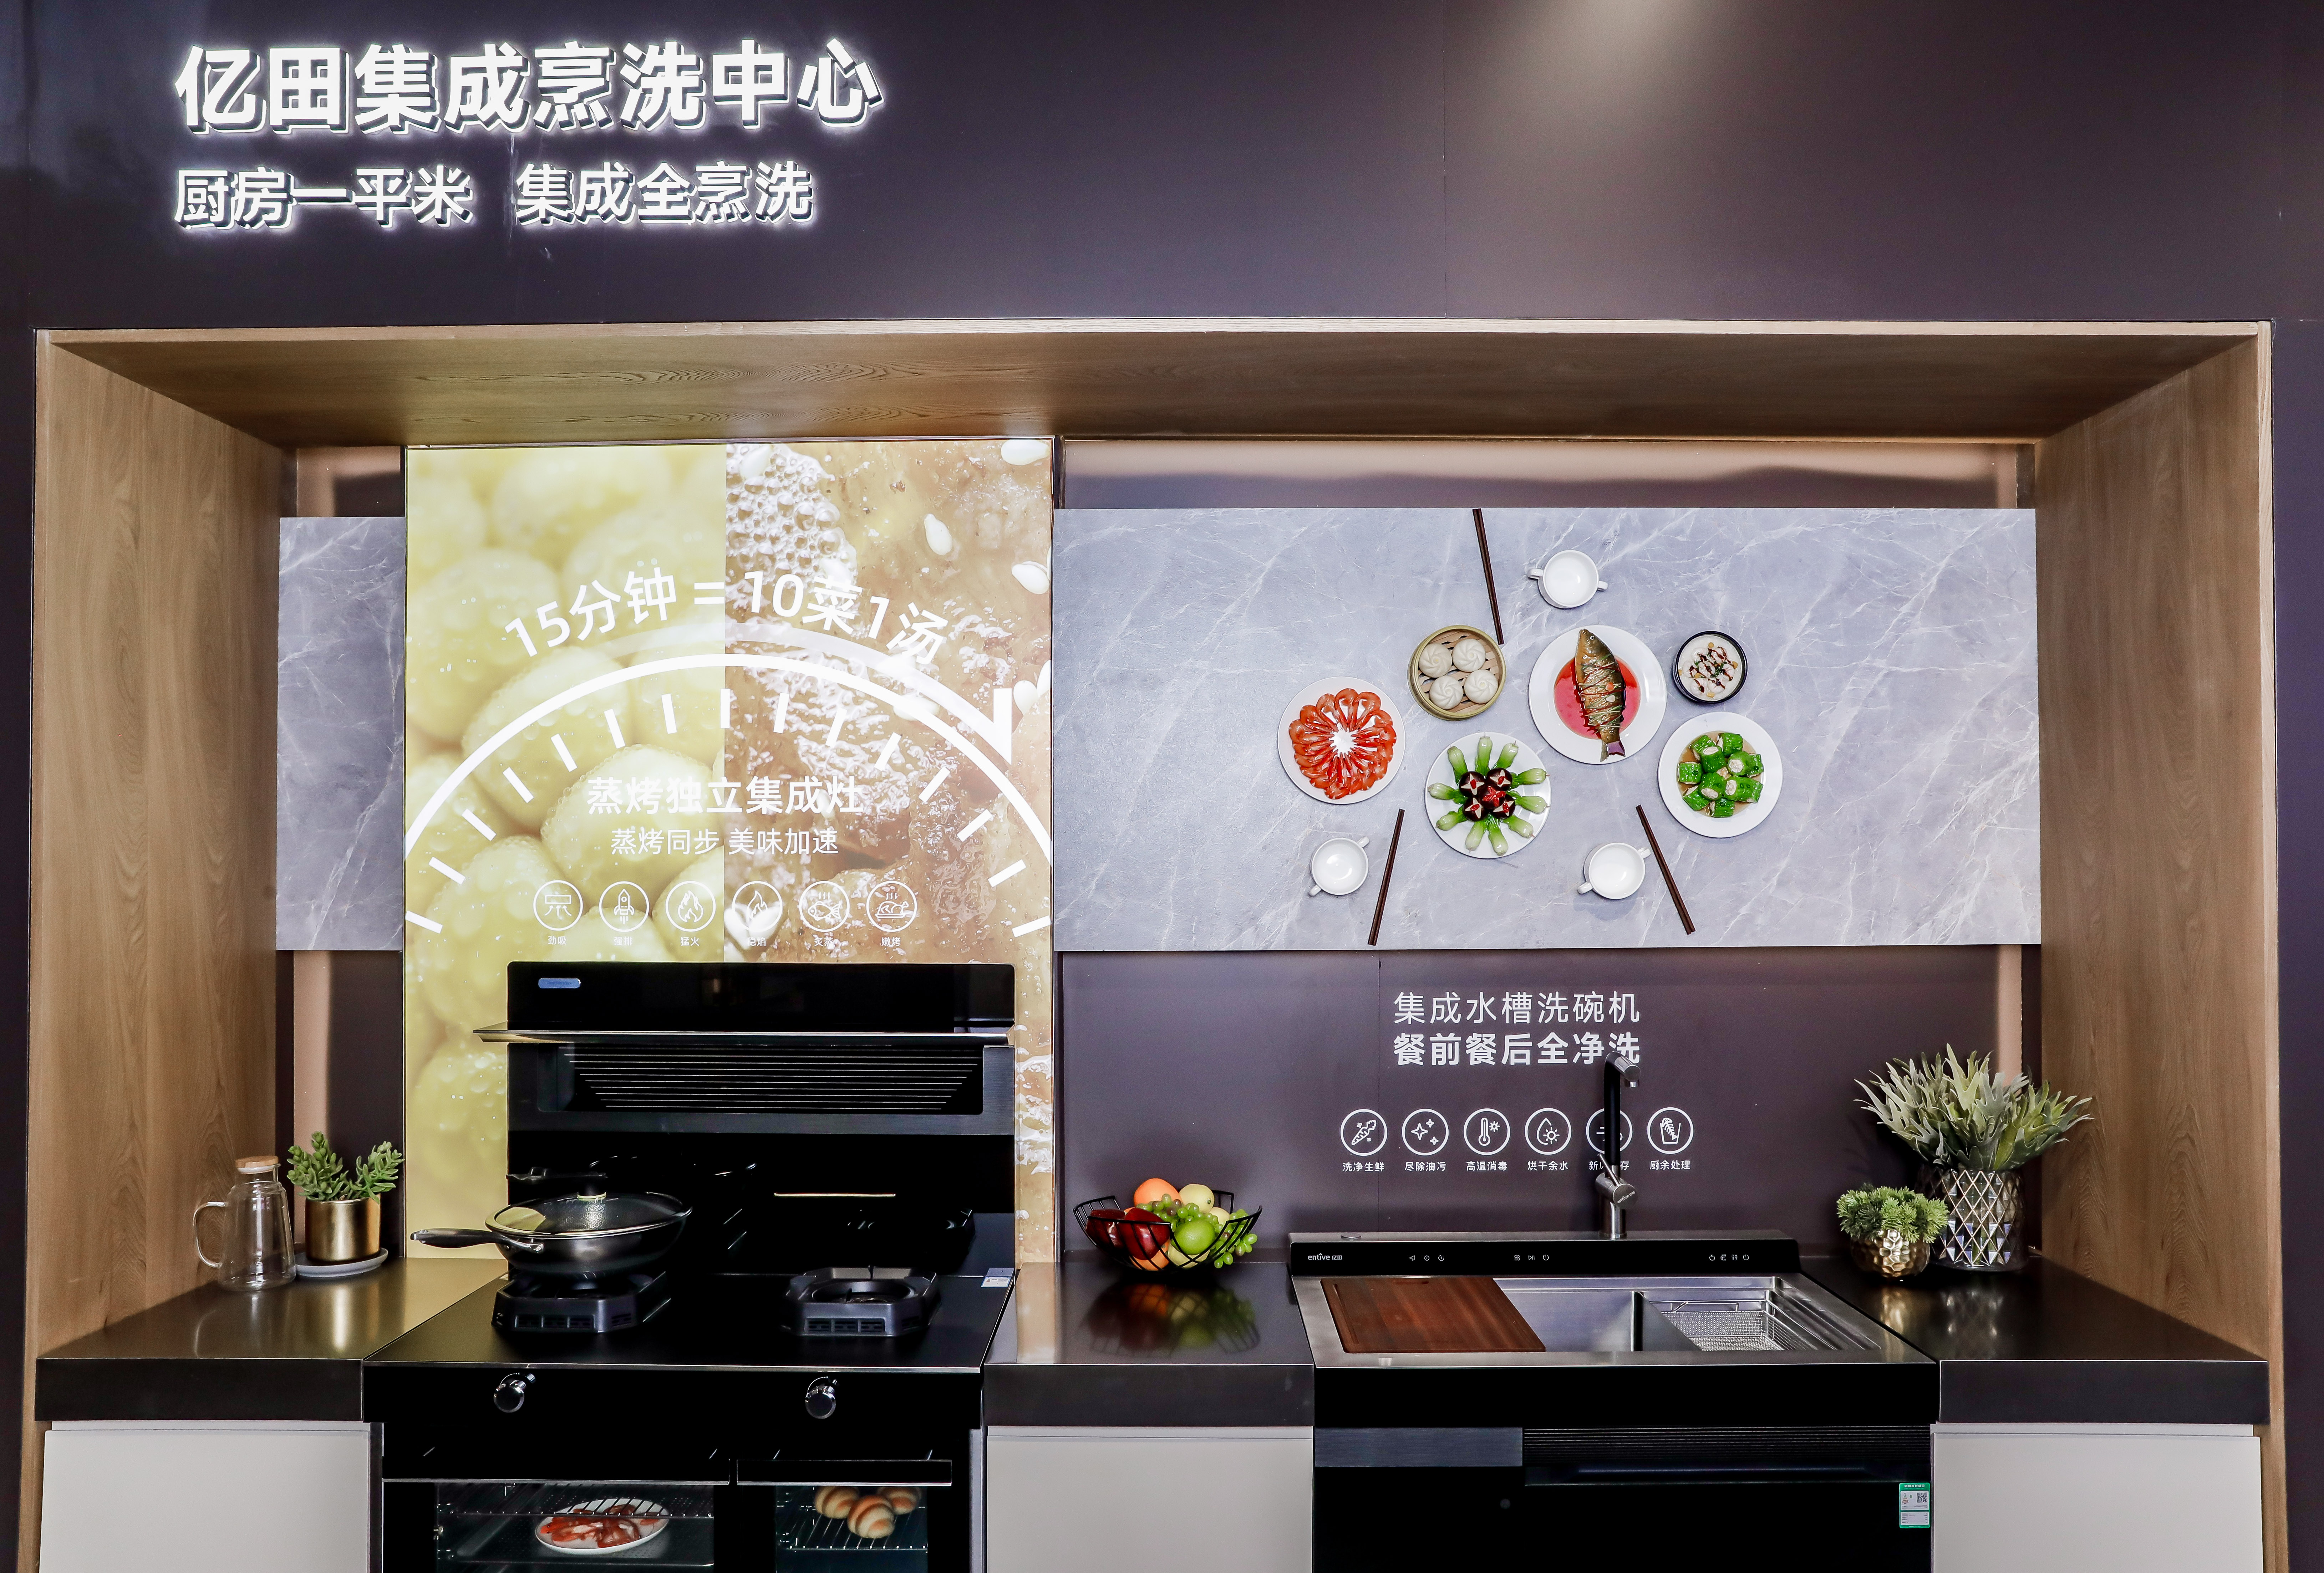 悄然崛起的“亿田集成烹洗中心”，究竟如何重构中国厨房?